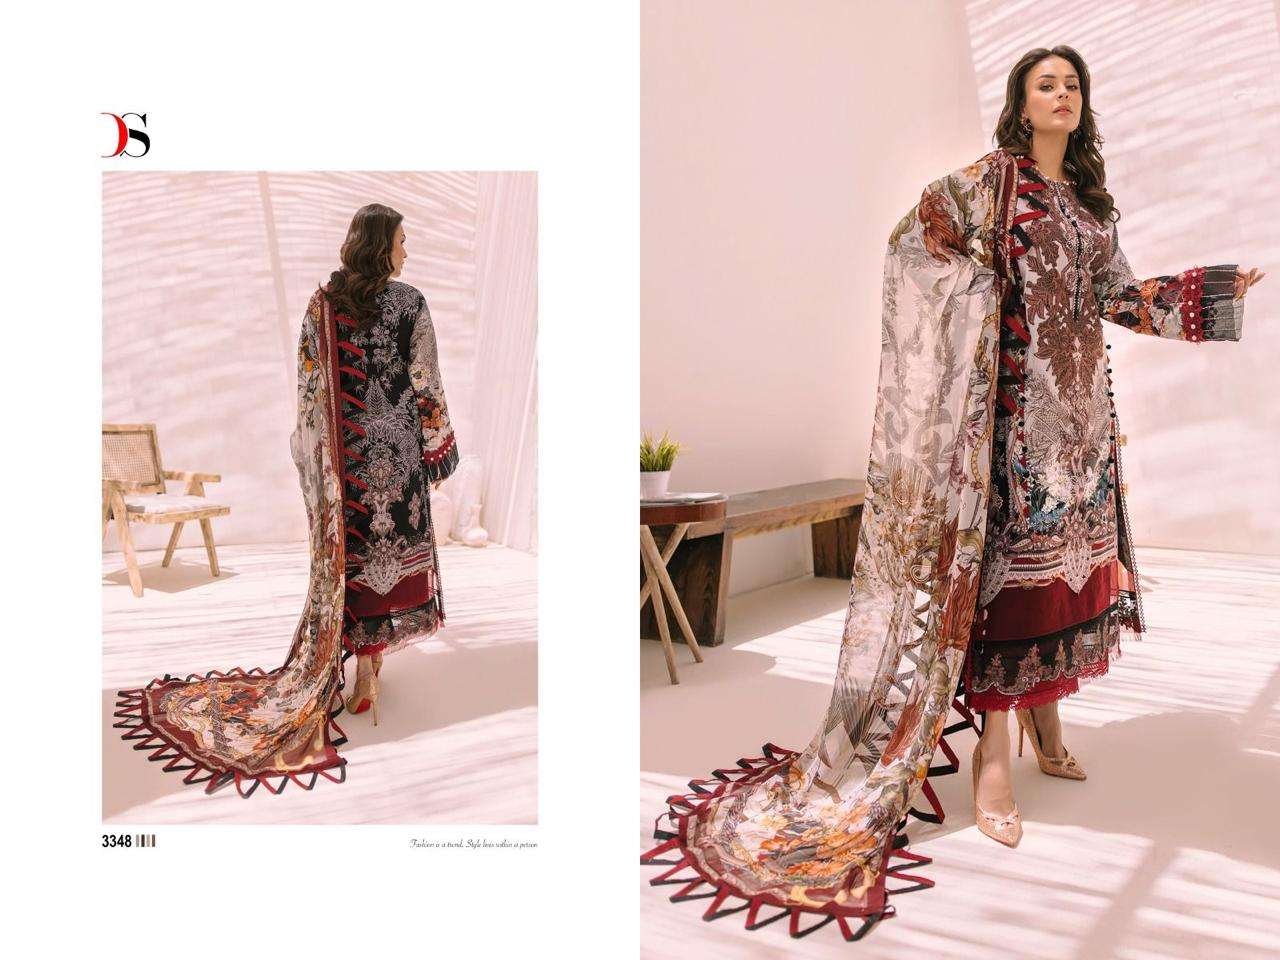 Deepsy Firdous Bliss Lawn 23 Cotton Dupatta Pakistani Salwar Suits Wholesale catalog